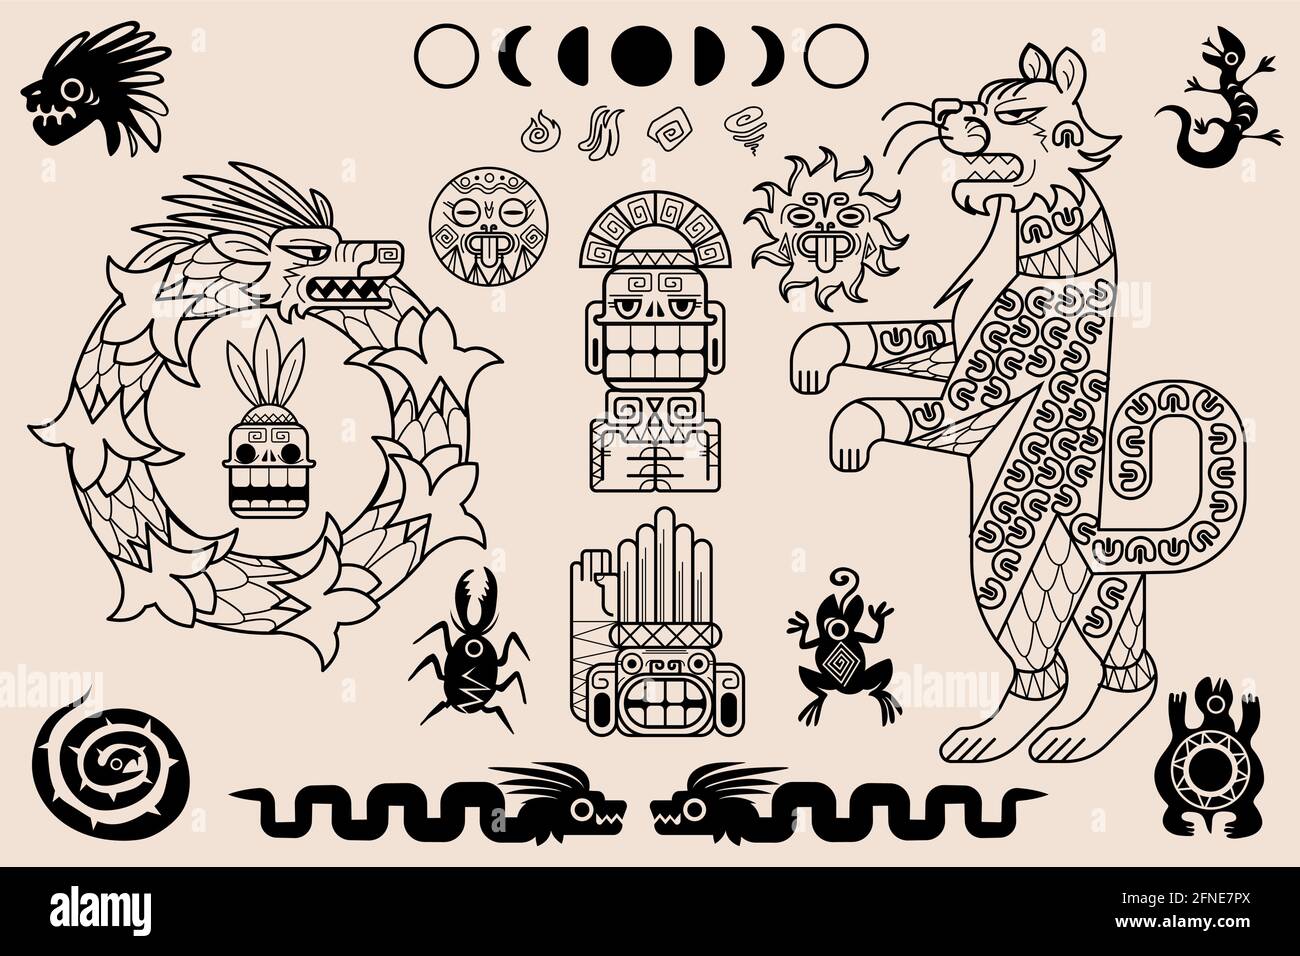 Ornements aztèques et mayas, motifs tribaux mexicains anciens. Art indigène ethnique ensemble de vecteurs d'illustrations géométriques indiennes traditionnelles mexicaines avec des animaux et des totems Illustration de Vecteur